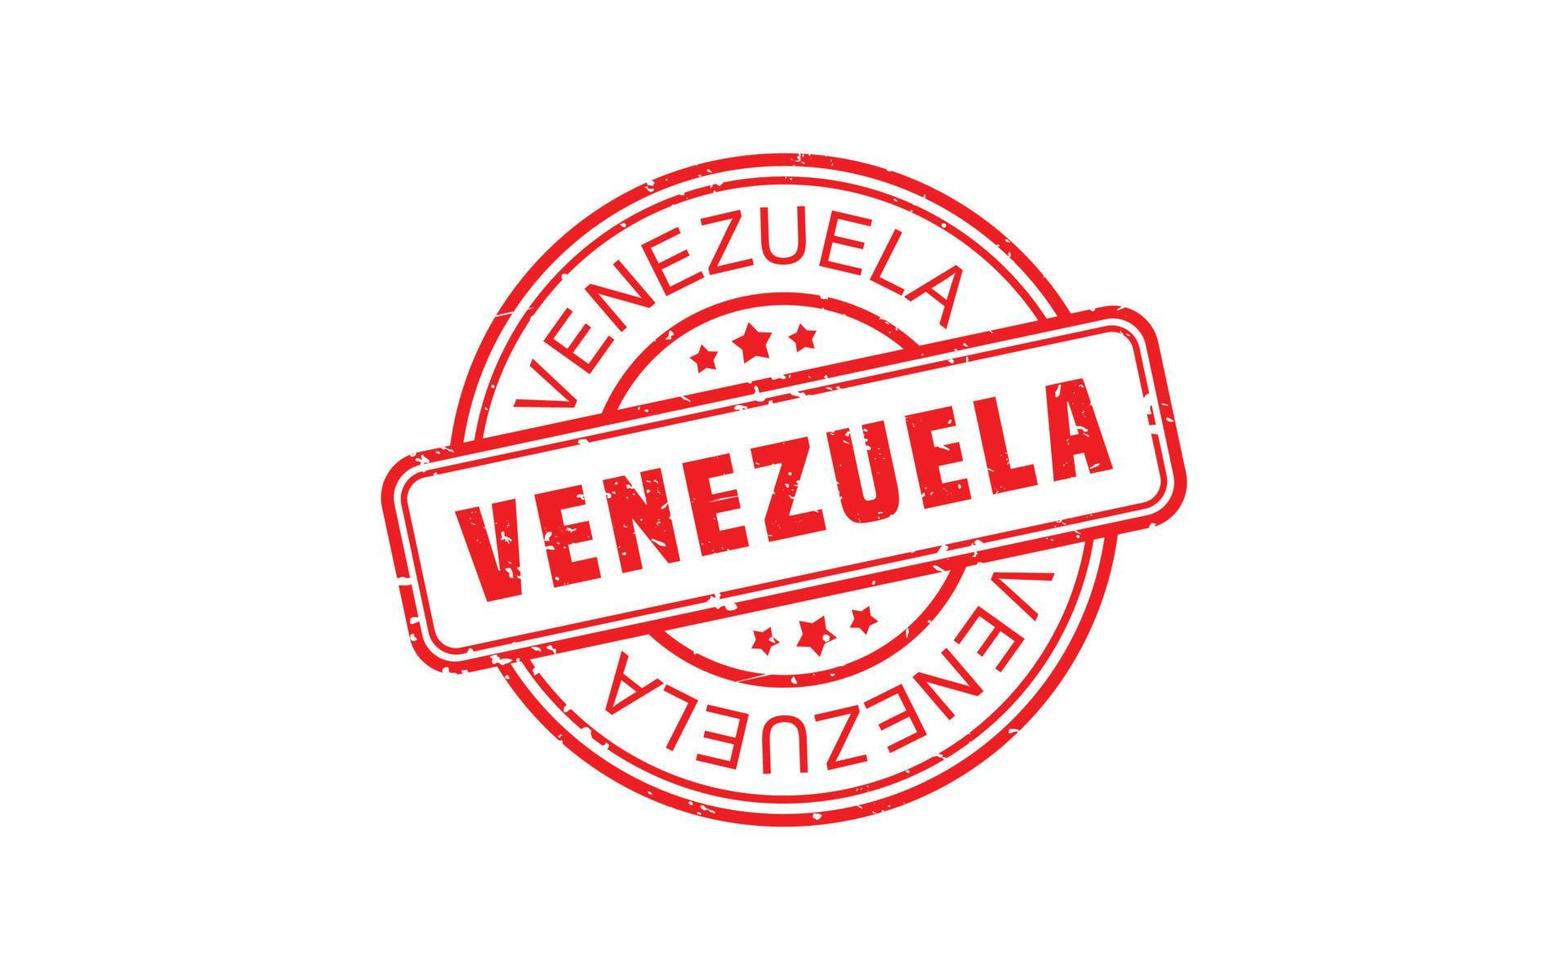 Venezuela timbre caoutchouc avec grunge style sur blanc Contexte vecteur